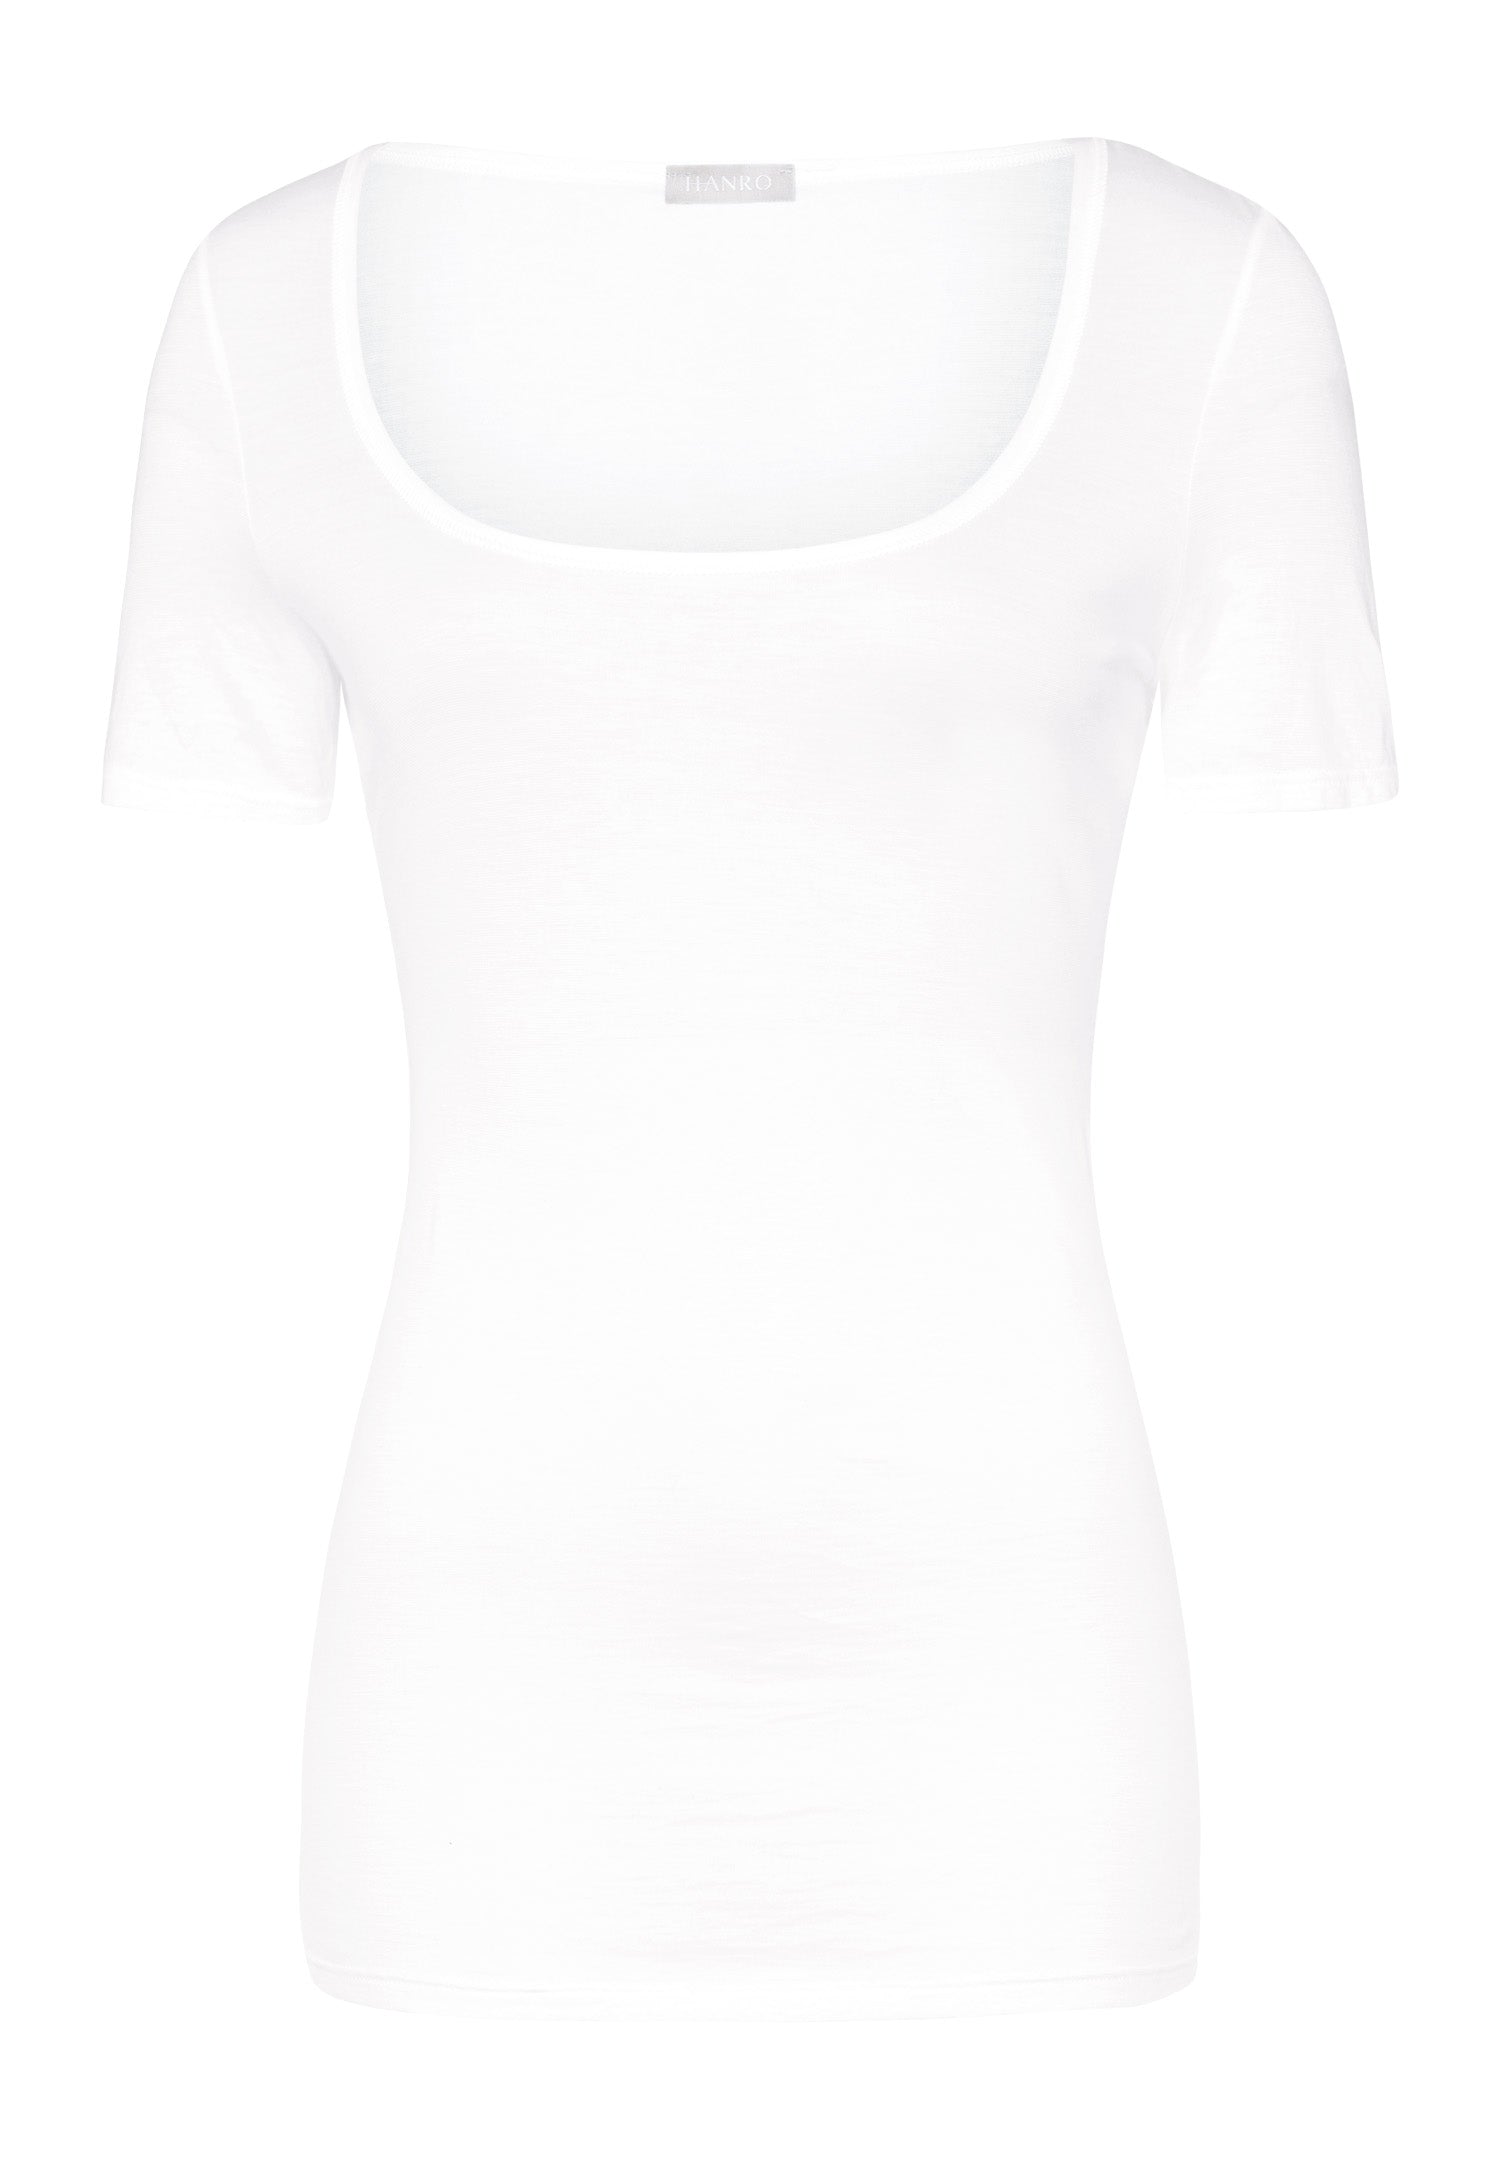 71827 Ultralight S/Slv Shirt - 101 White